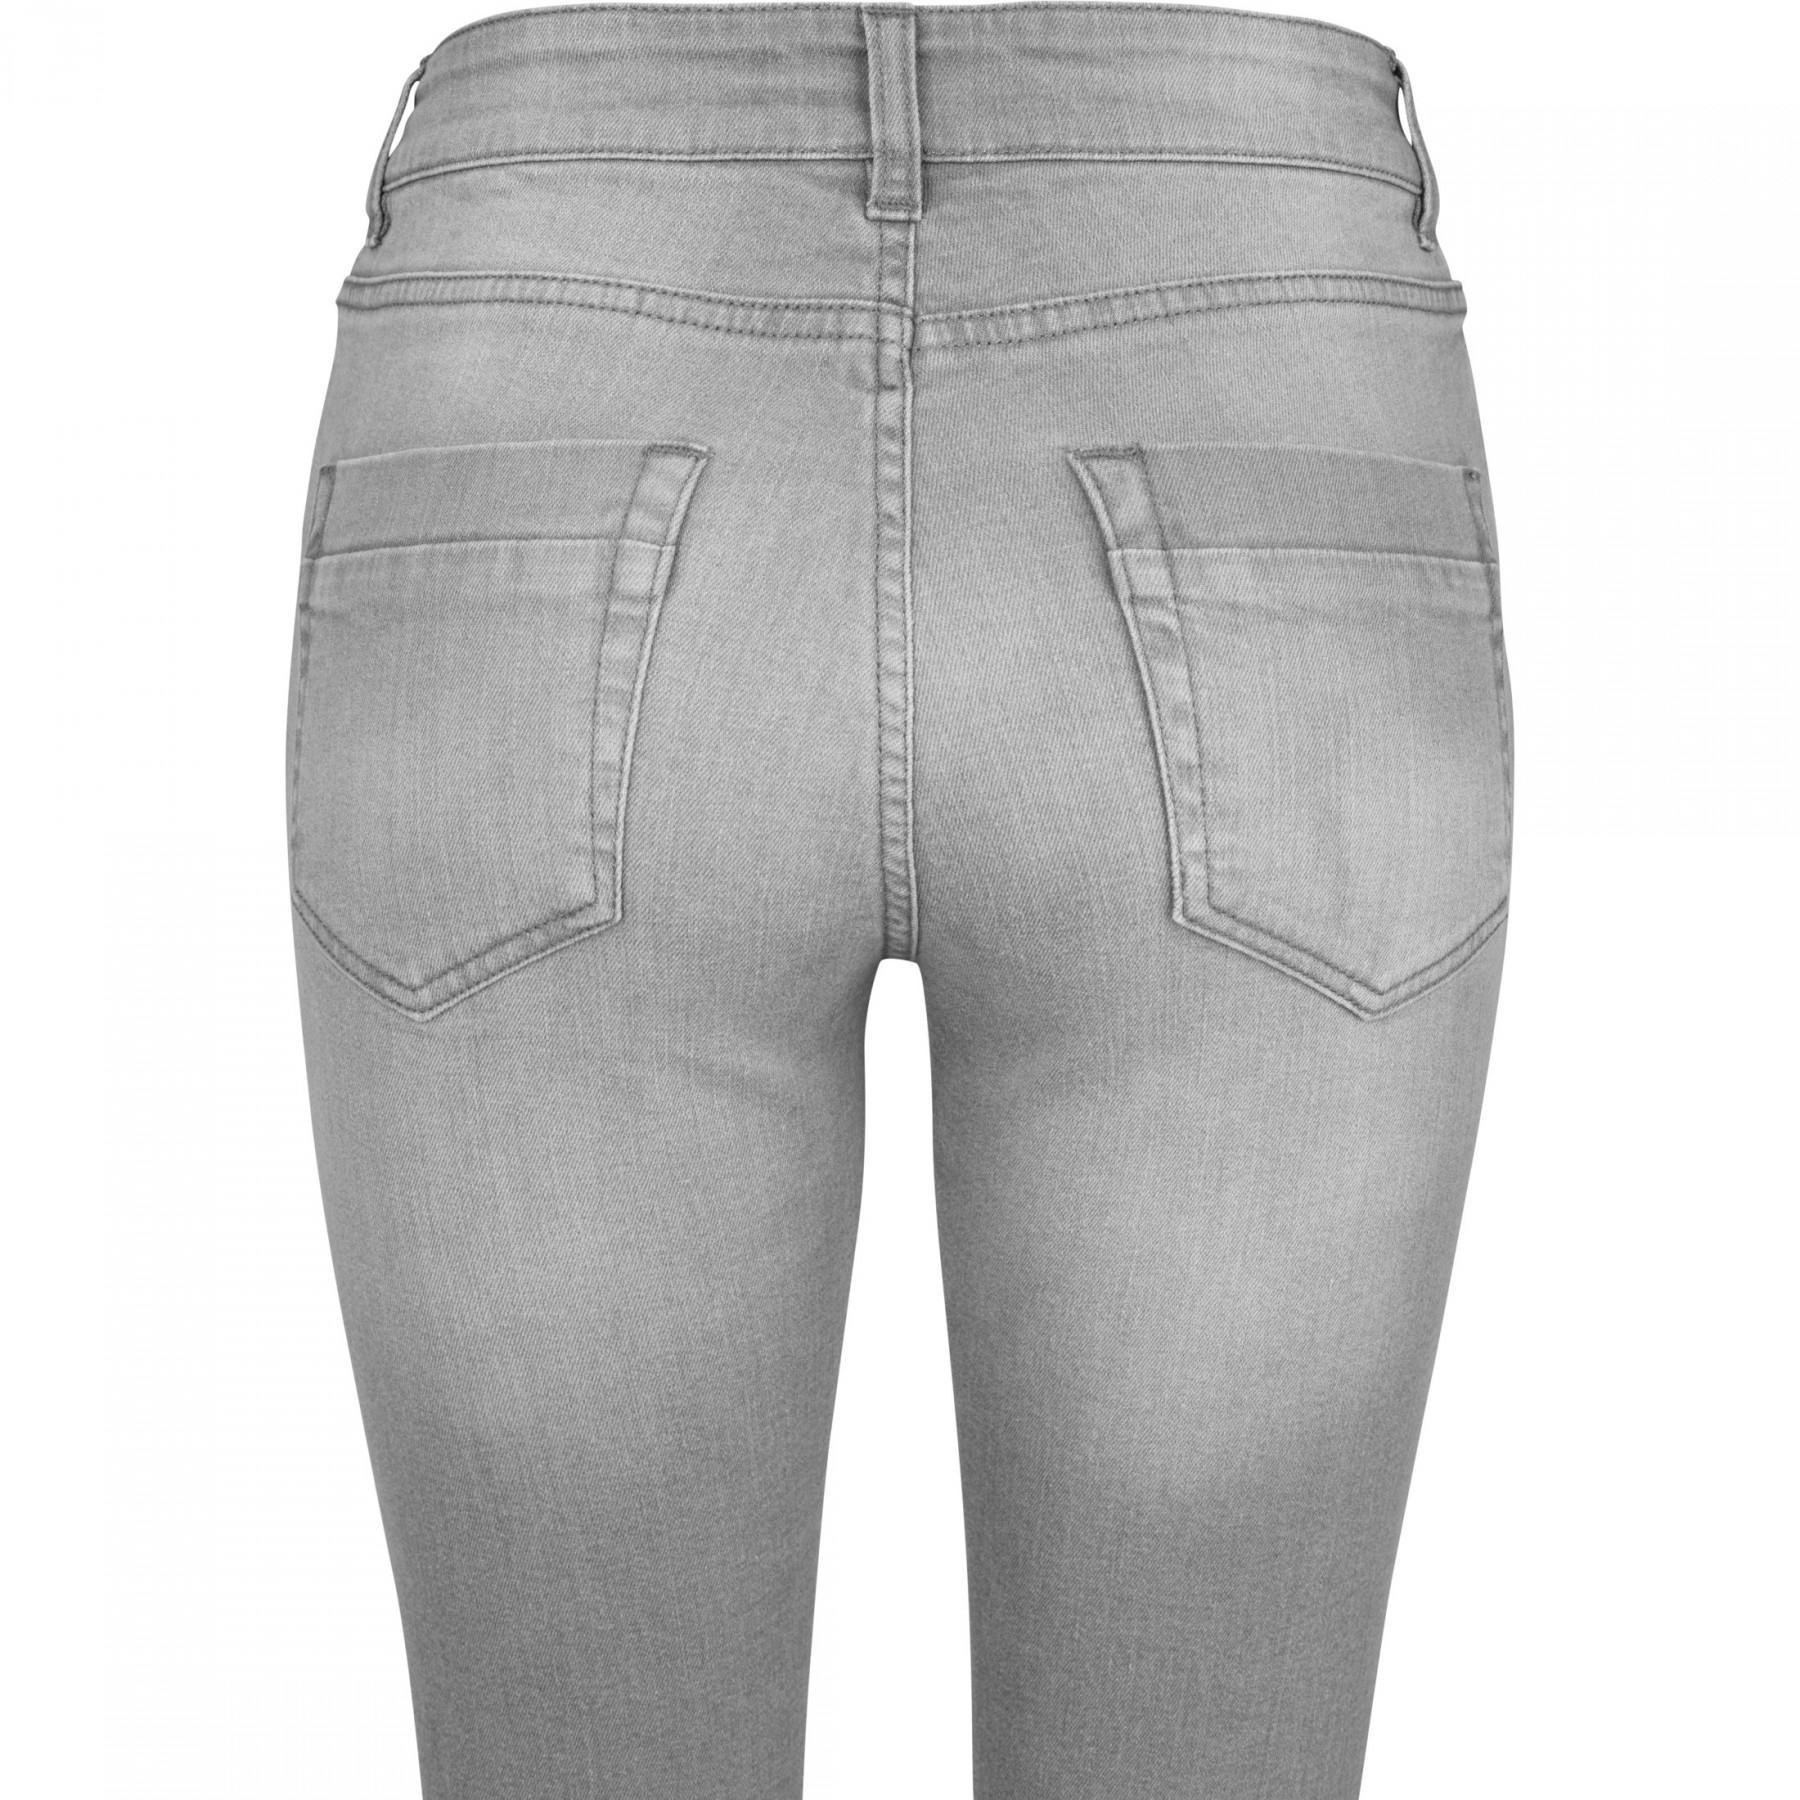 Pantalones mujer Urban Classic skinny denim